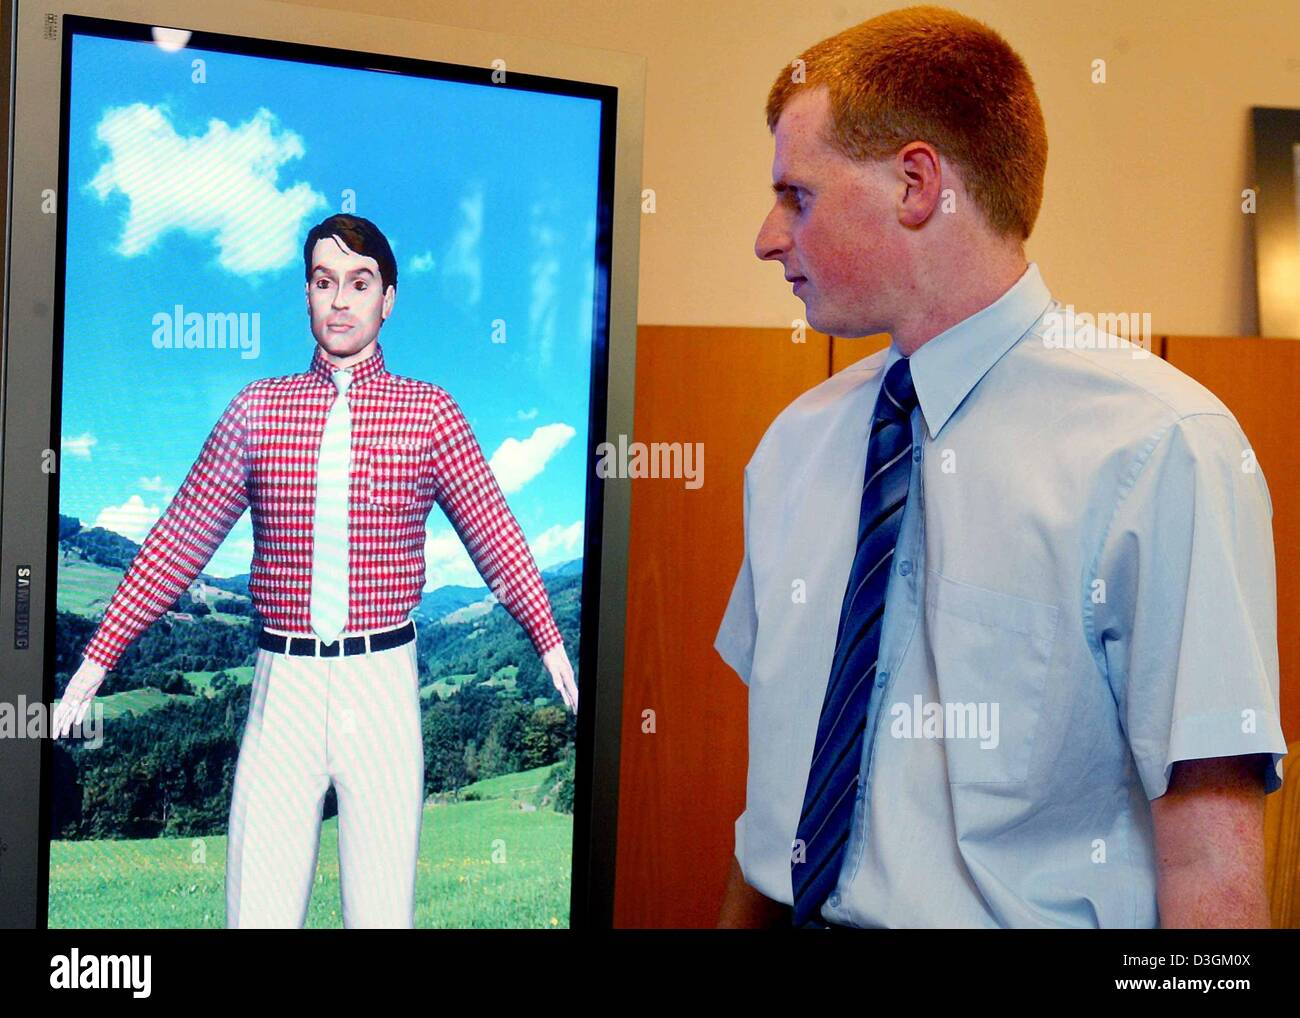 Dpa) - Un uomo esamina in un "specchio virtuale' computer immagine generata  da una maglietta con la sua dimensione in Francoforte sul Meno, Germania,  17 giugno 2004. "Specchio virtuale' consente ai clienti